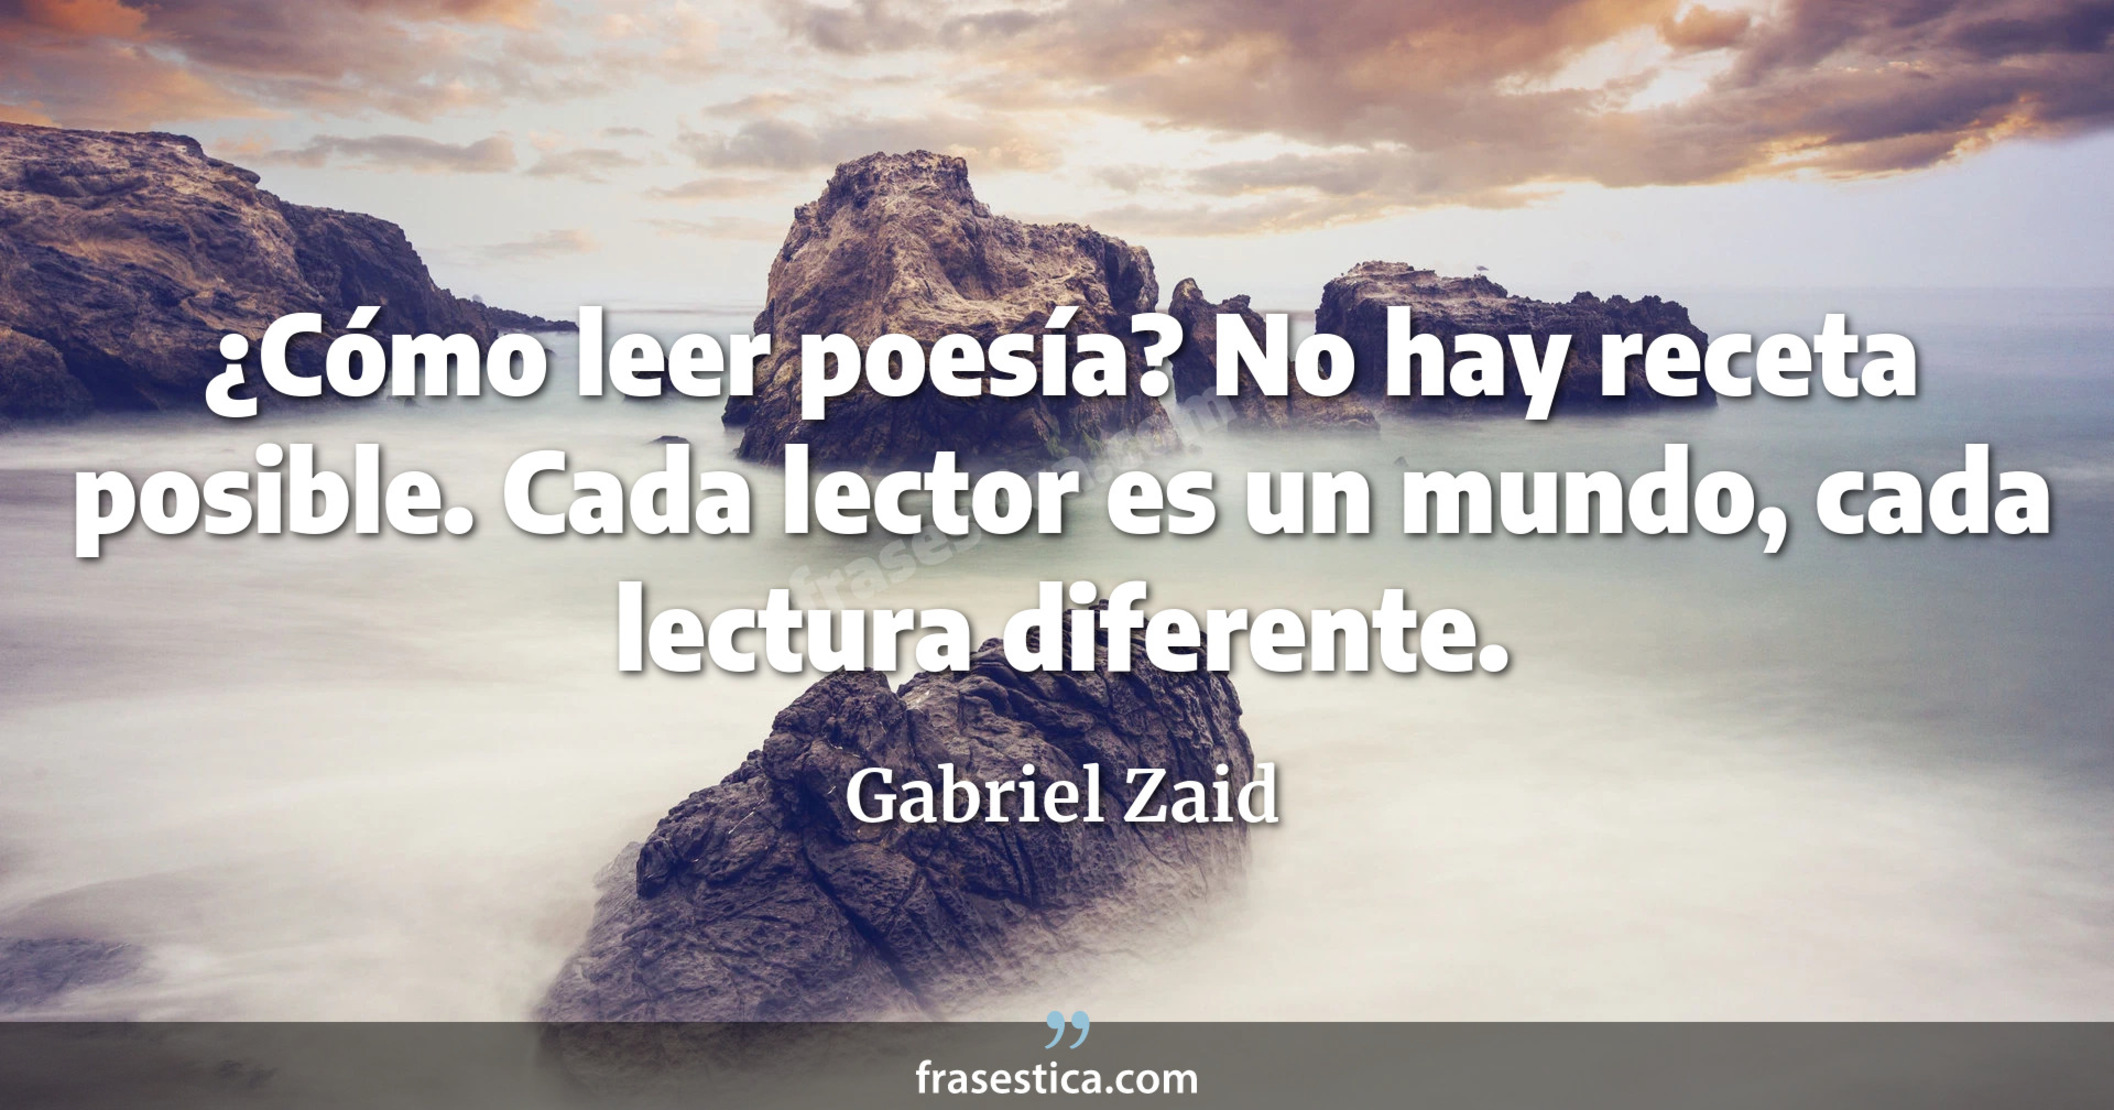 ¿Cómo leer poesía? No hay receta posible. Cada lector es un mundo, cada lectura diferente. - Gabriel Zaid